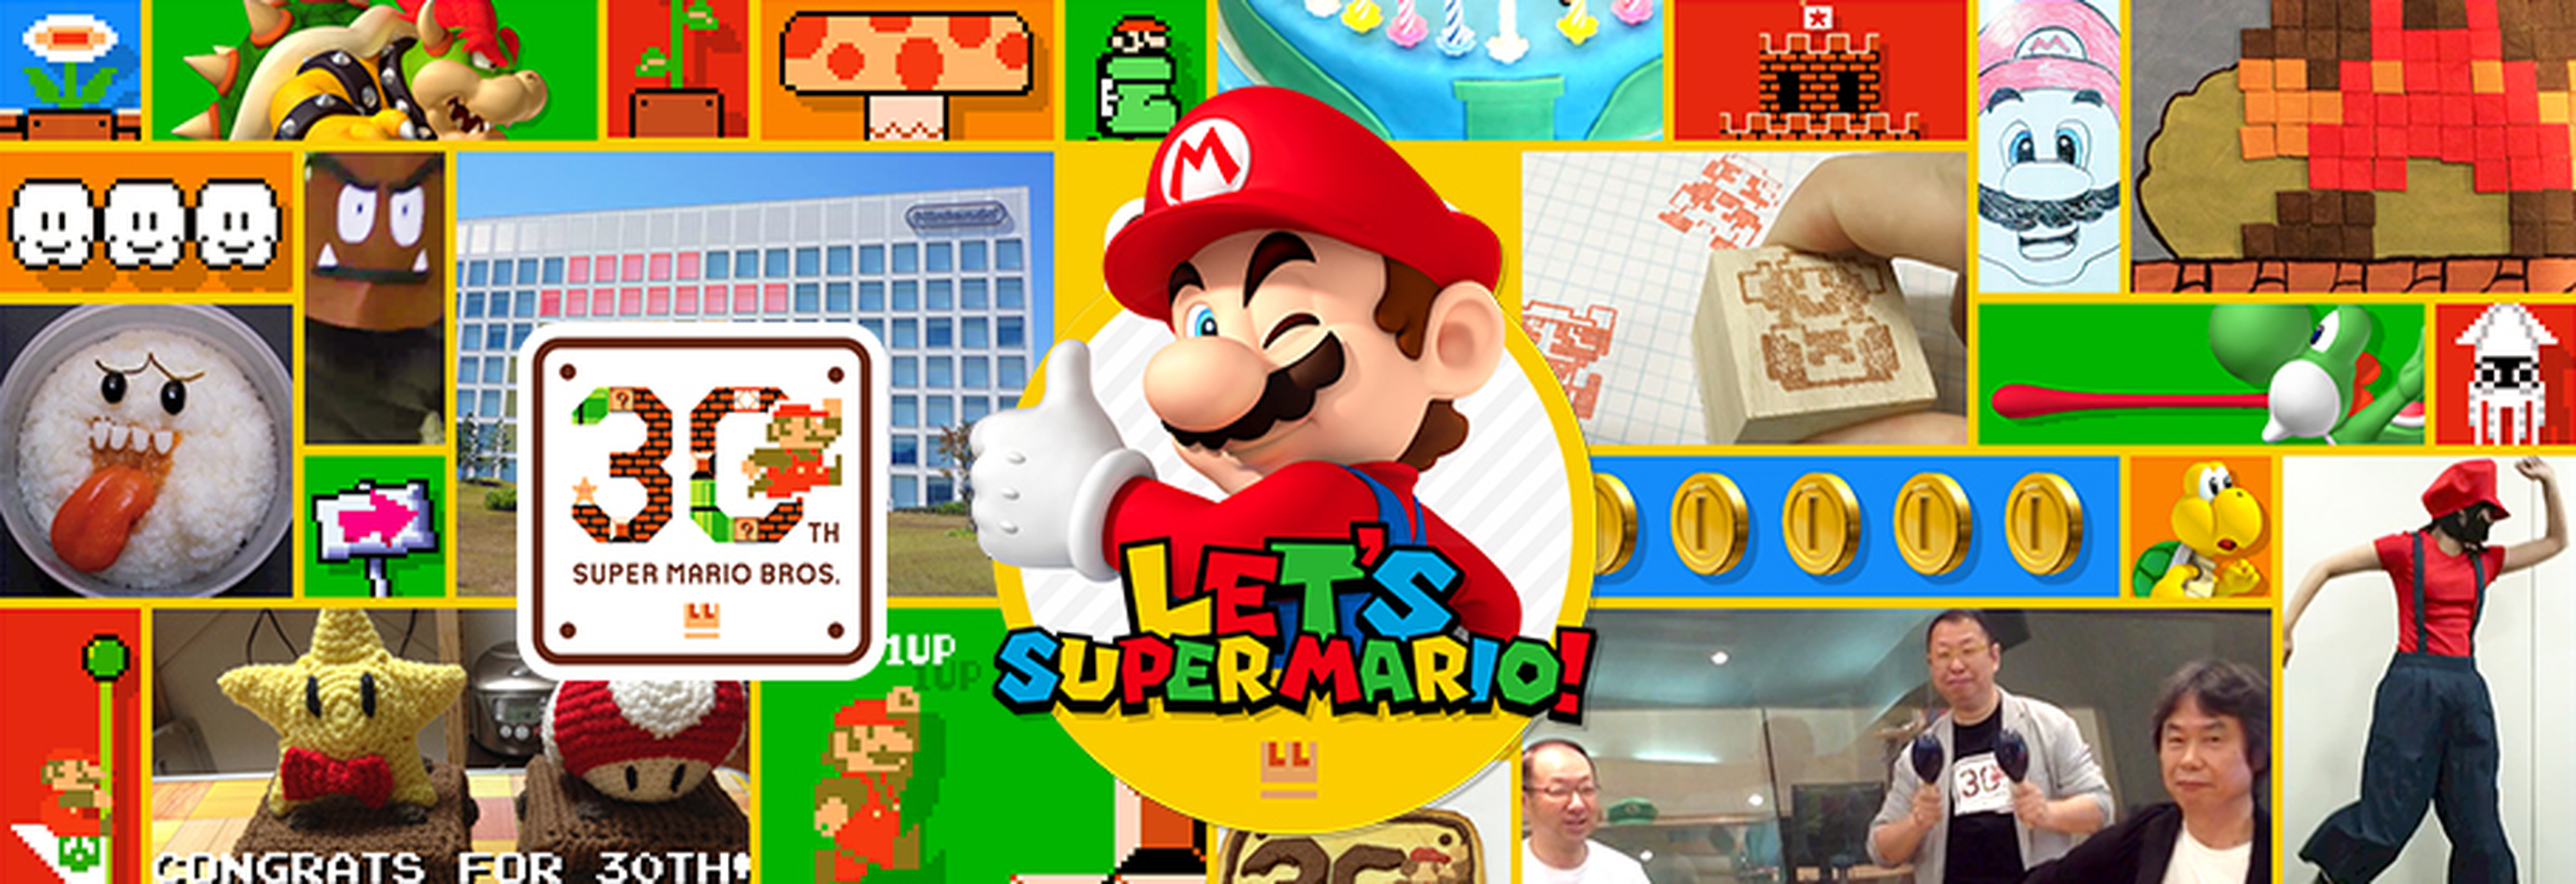 ¡Felicita a Mario en la Revista Oficial Nintendo!